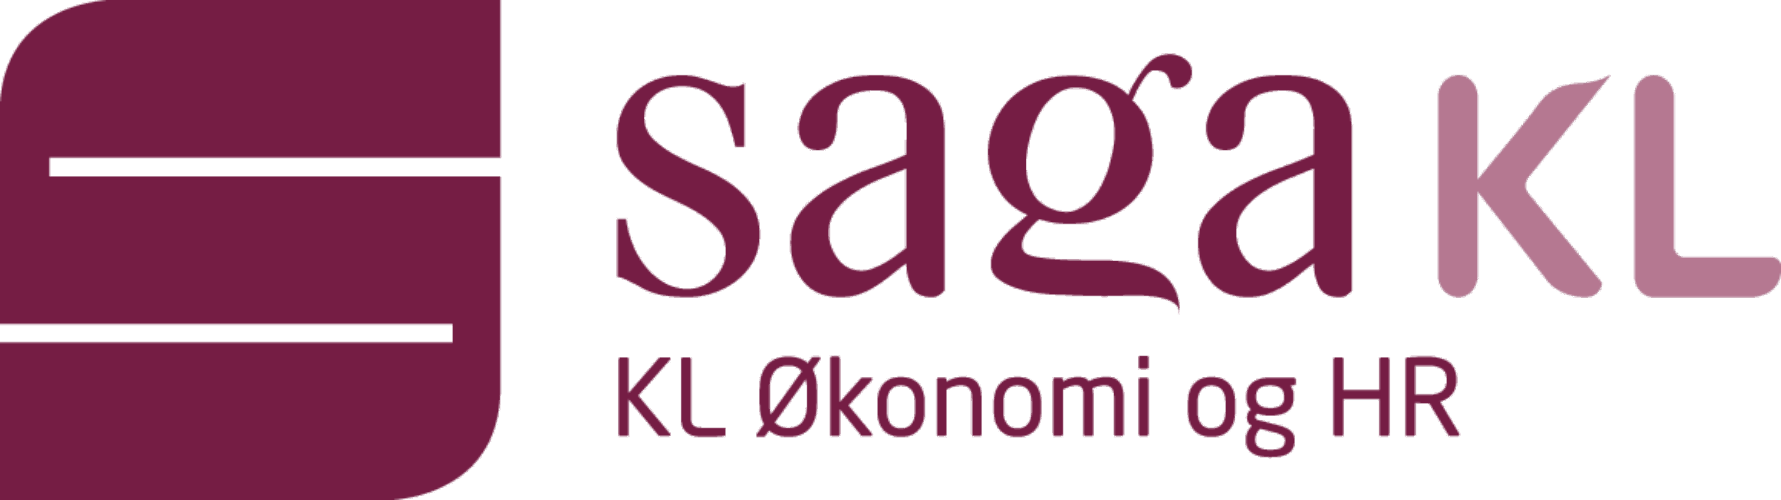 Saga KL logo KL ÿkonomi og HR 1